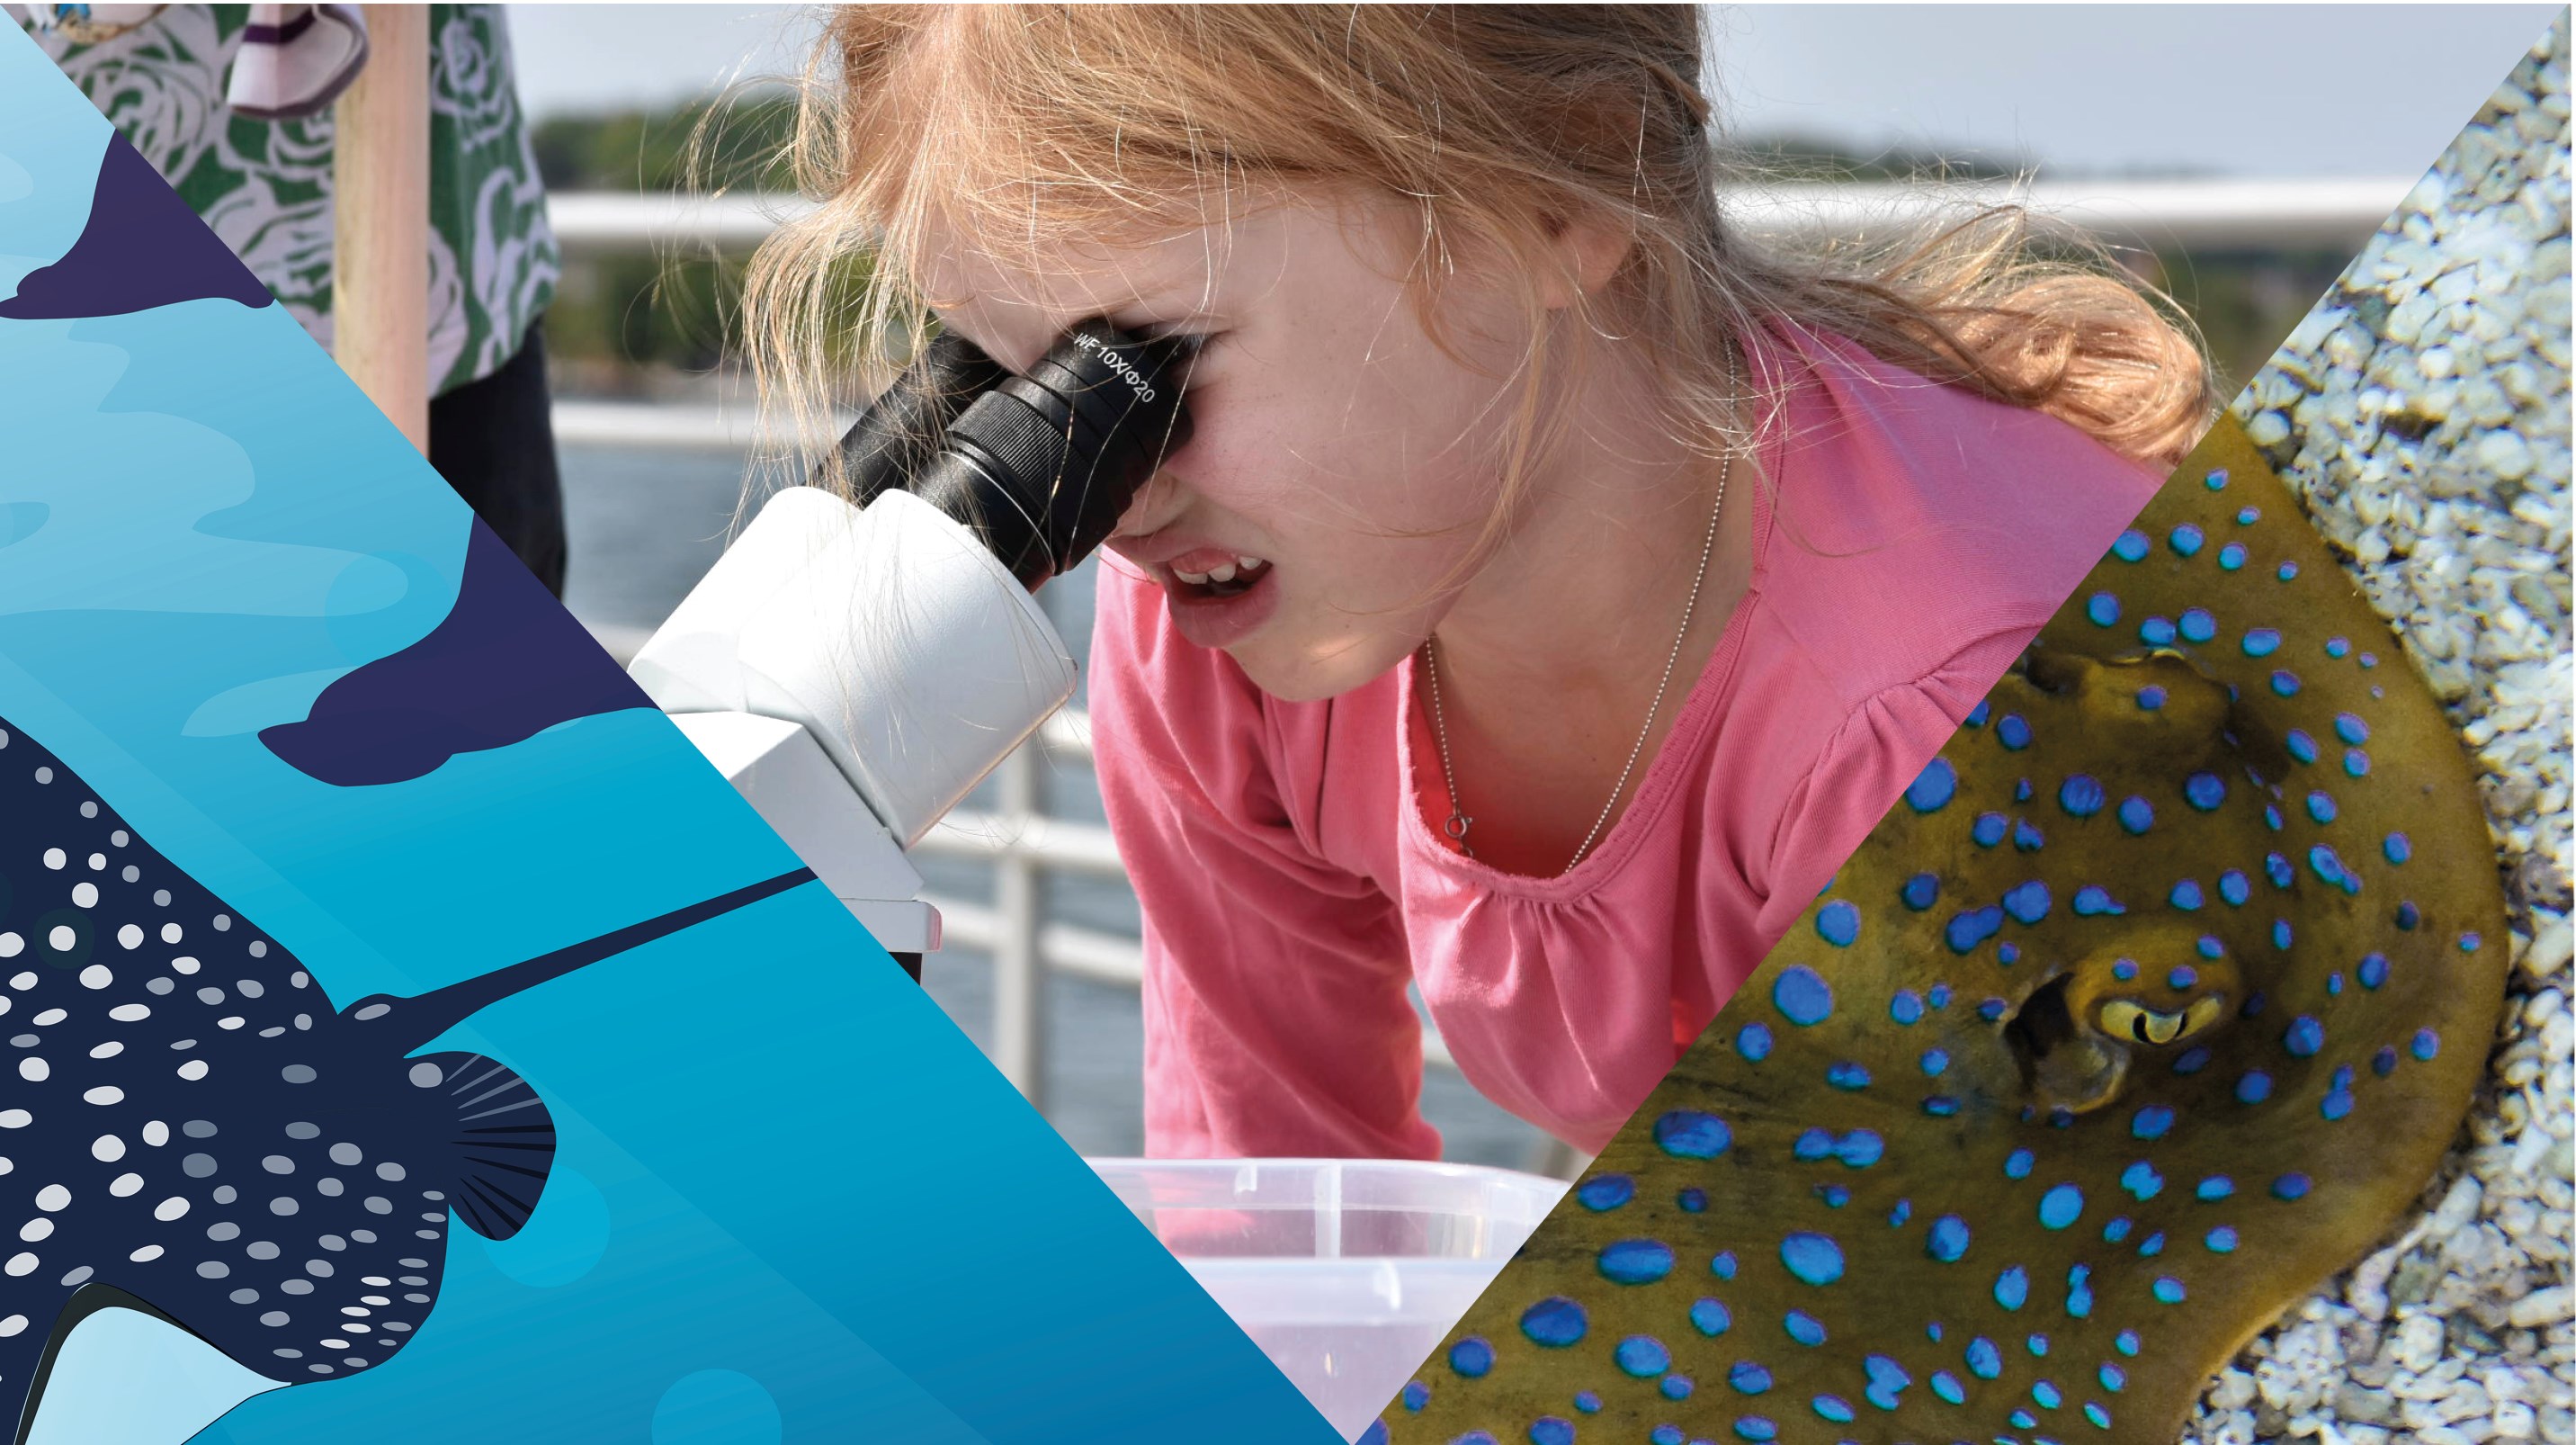 Kollage av tecknad bild på en rock, ett barn som tittar i ett mikroskop och ett foto på en prickig rocka